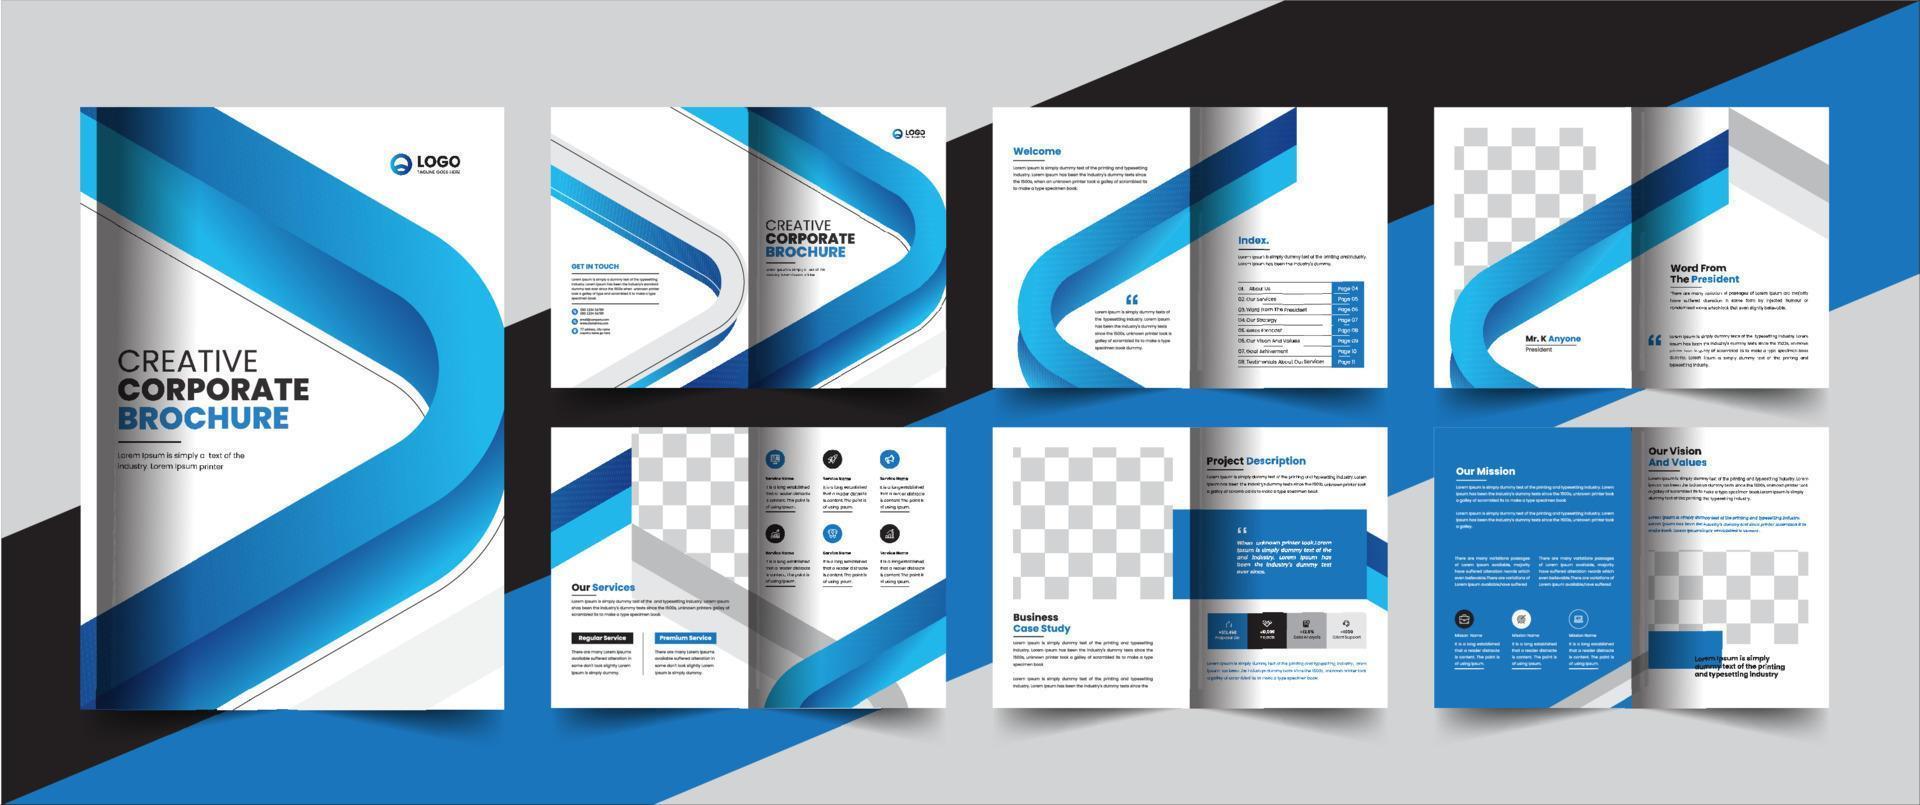 företagets företagsprofil broschyr årsredovisning häfte affärsförslag layout konceptdesign vektor